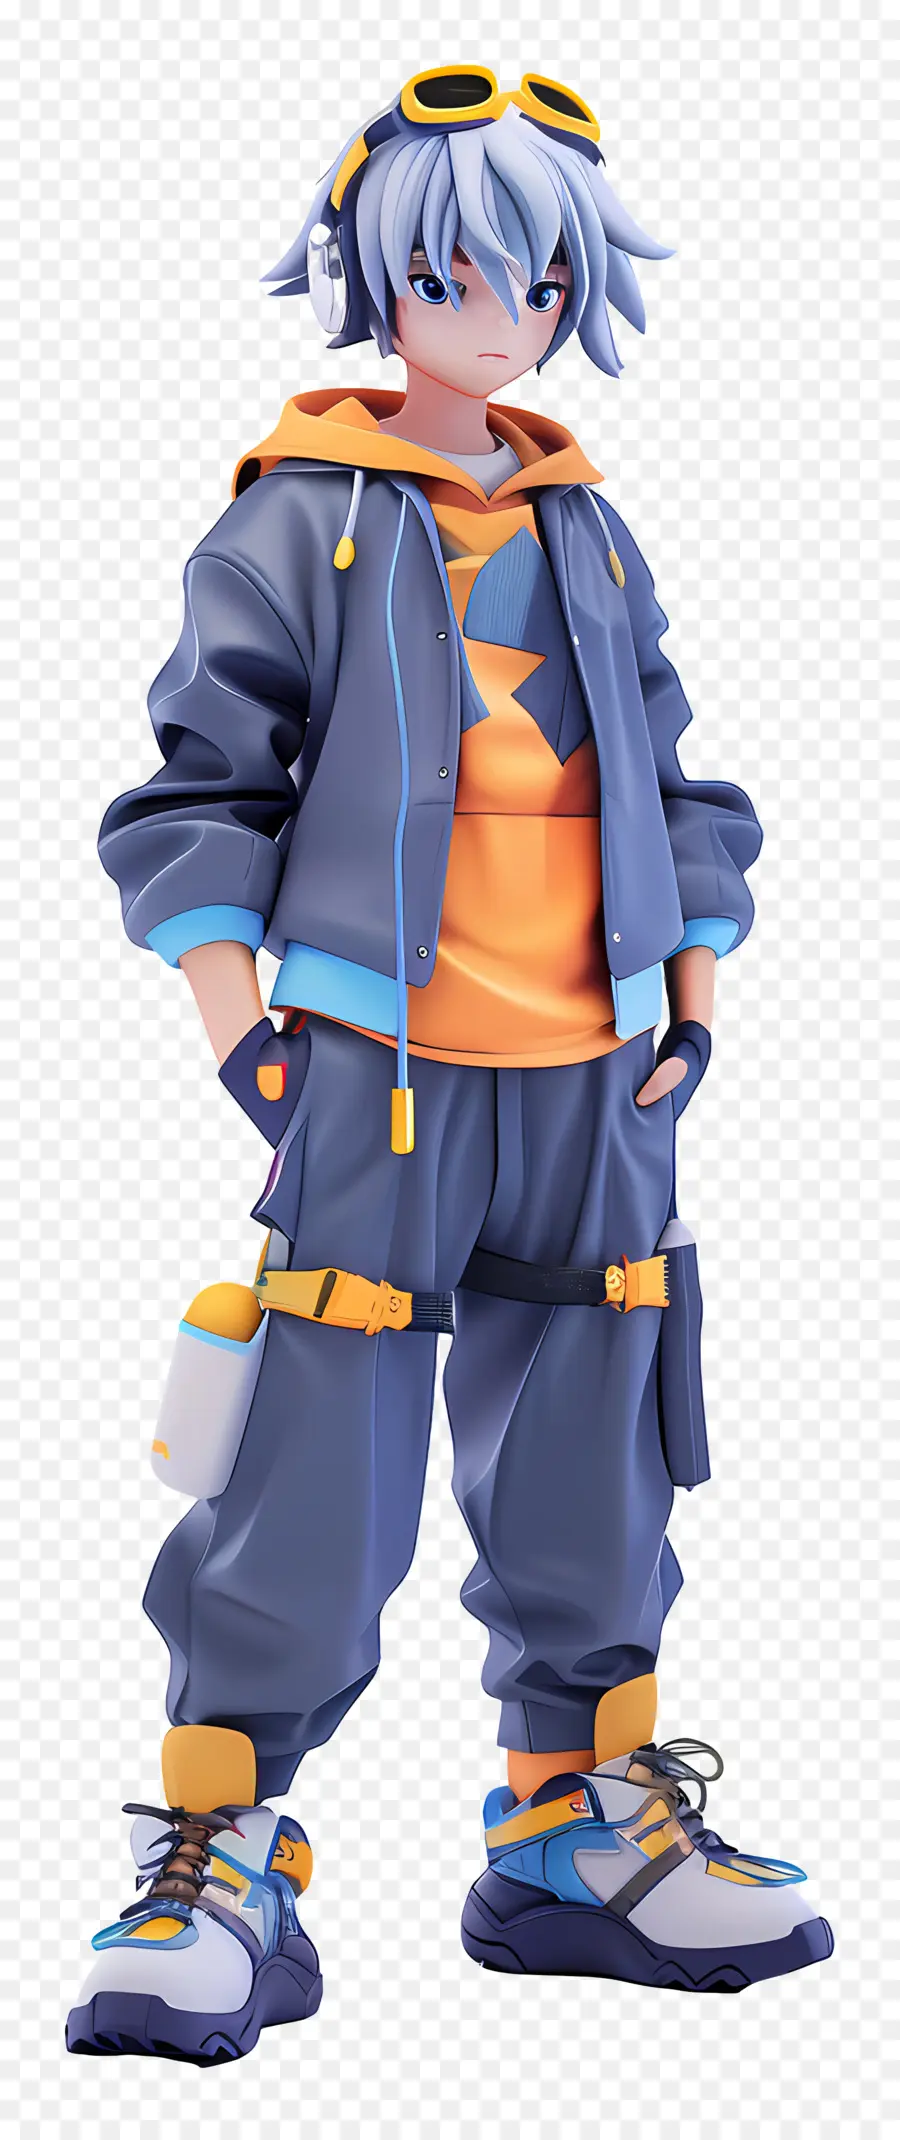 Anime hình trang phục áo khoác áo khoác kiểu đường phố thời trang - Nhân vật sành điệu trong trang phục đầy màu sắc nụ cười tự tin